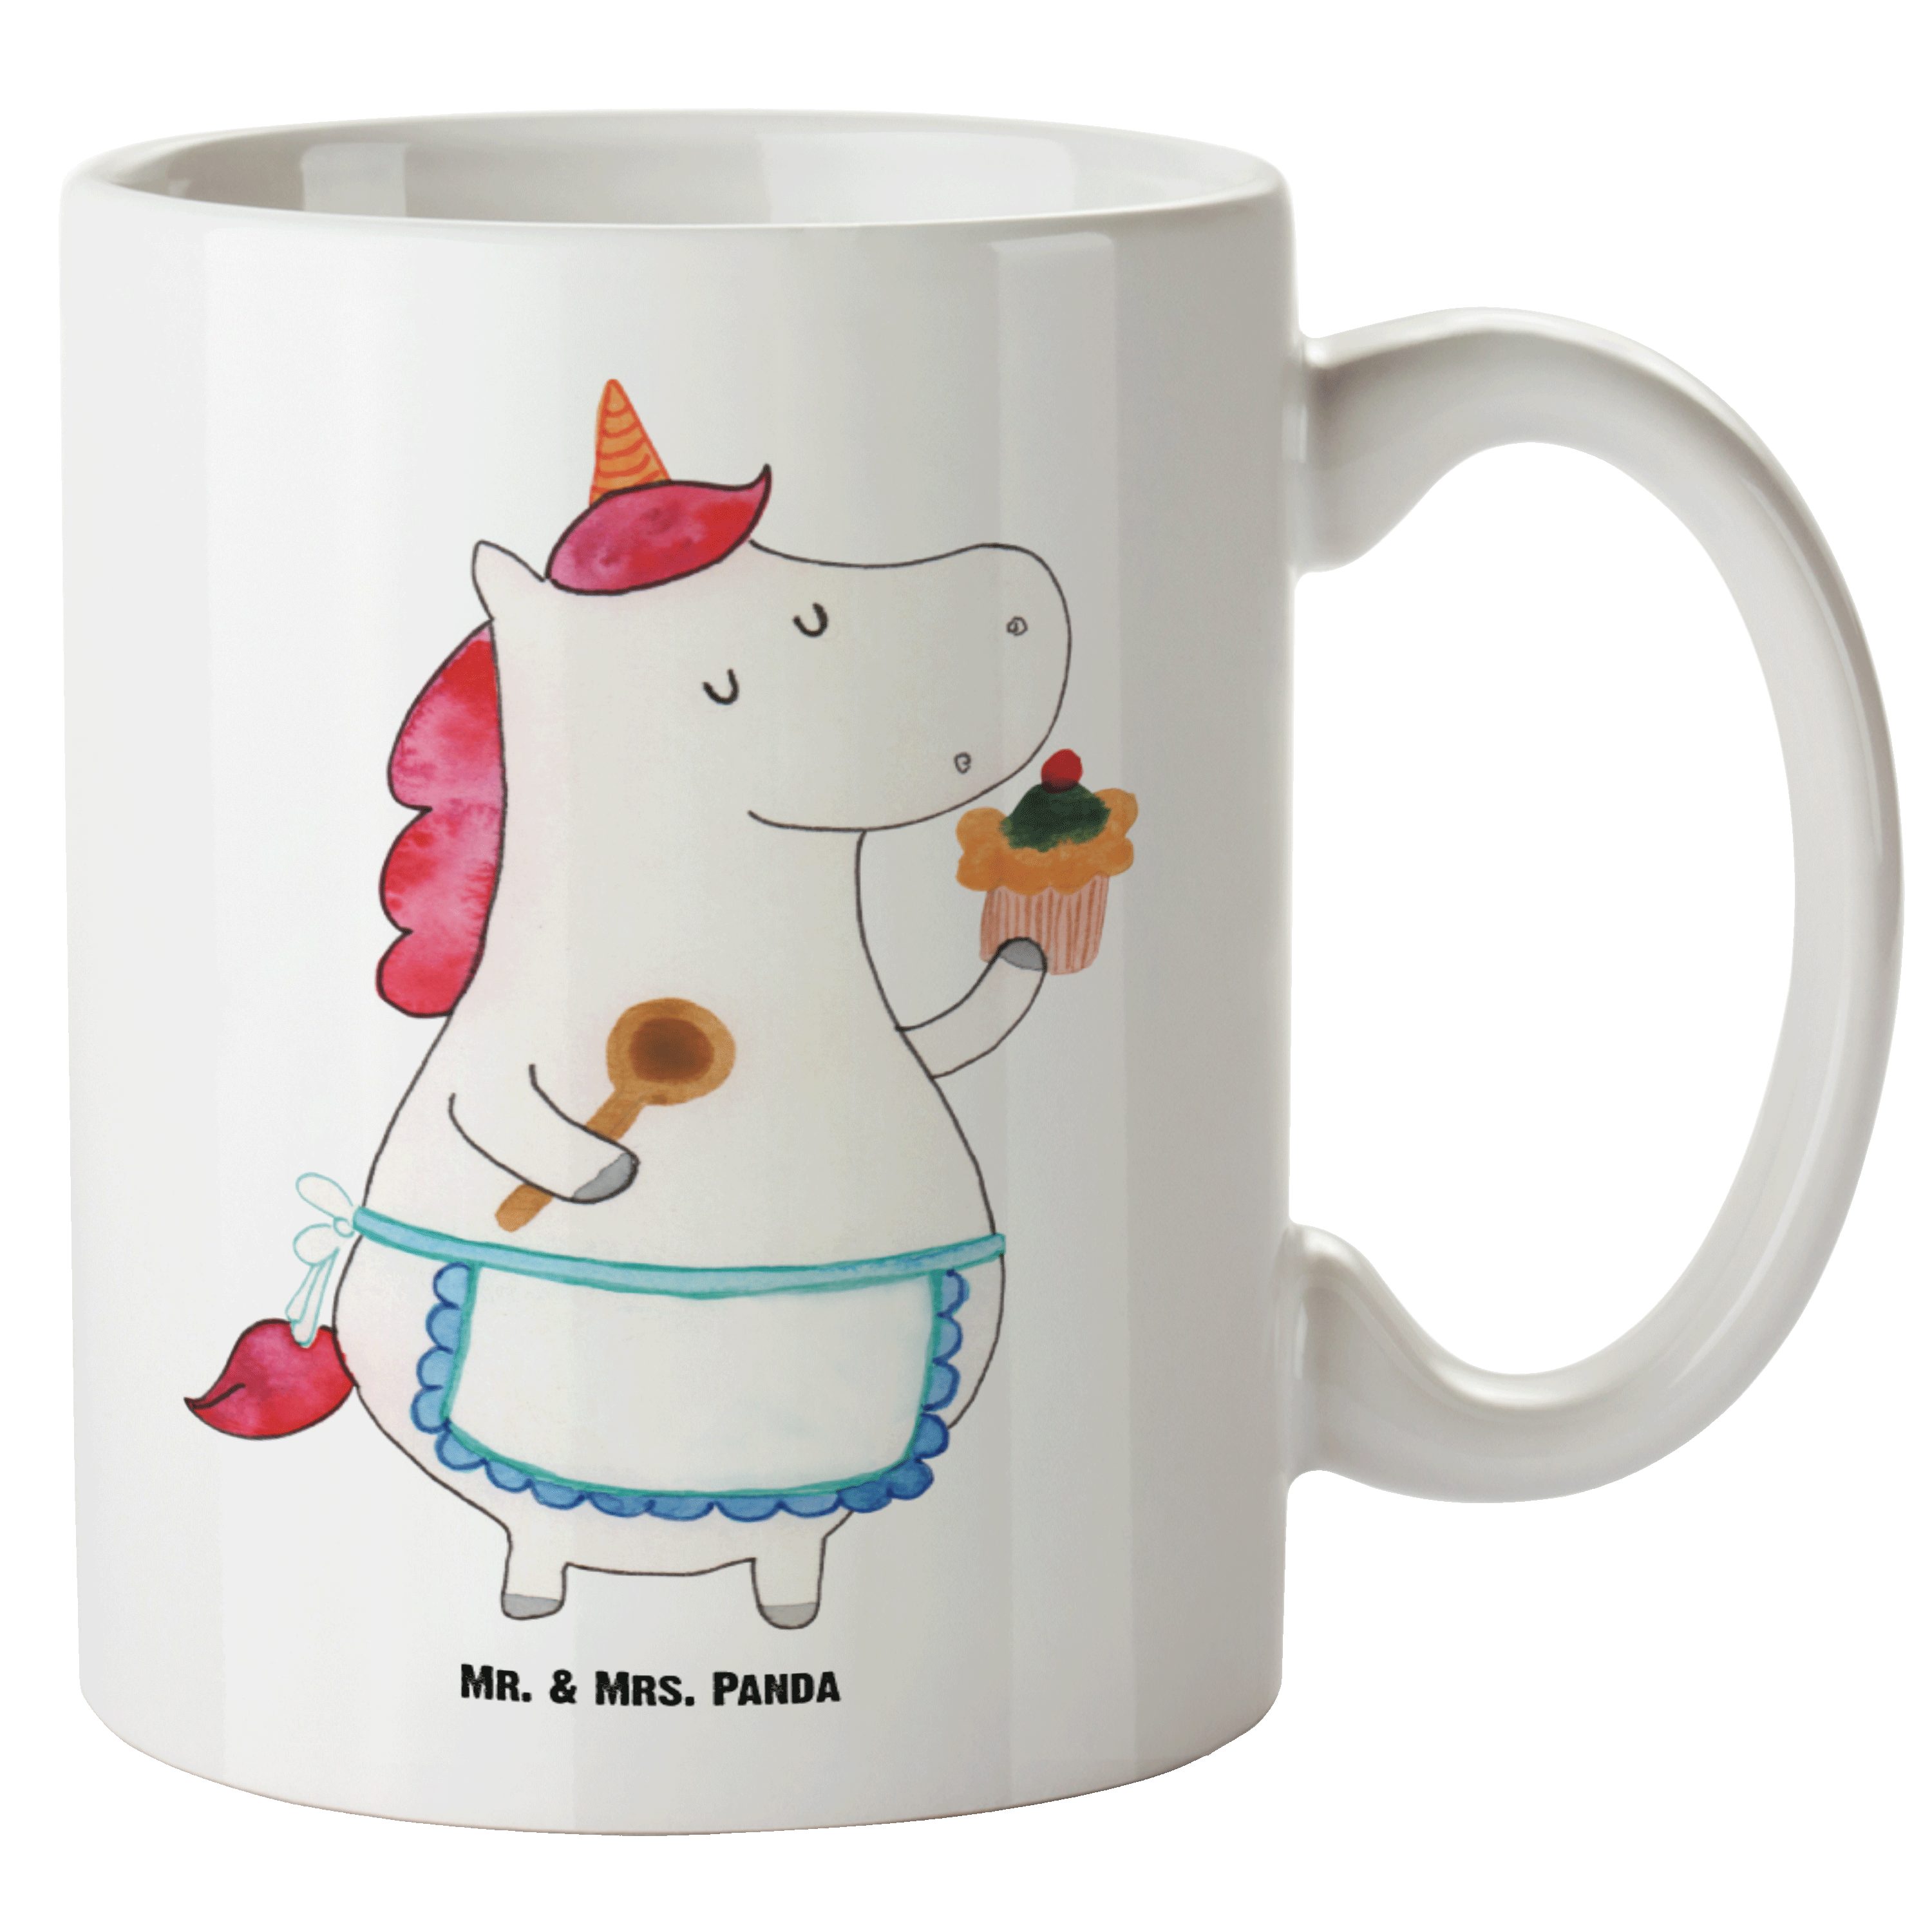 Mr. & Mrs. Panda Tasse Einhorn Küchenfee - Weiß - Geschenk, Pegasus, Muffin, Unicorn, Jumbo, XL Tasse Keramik